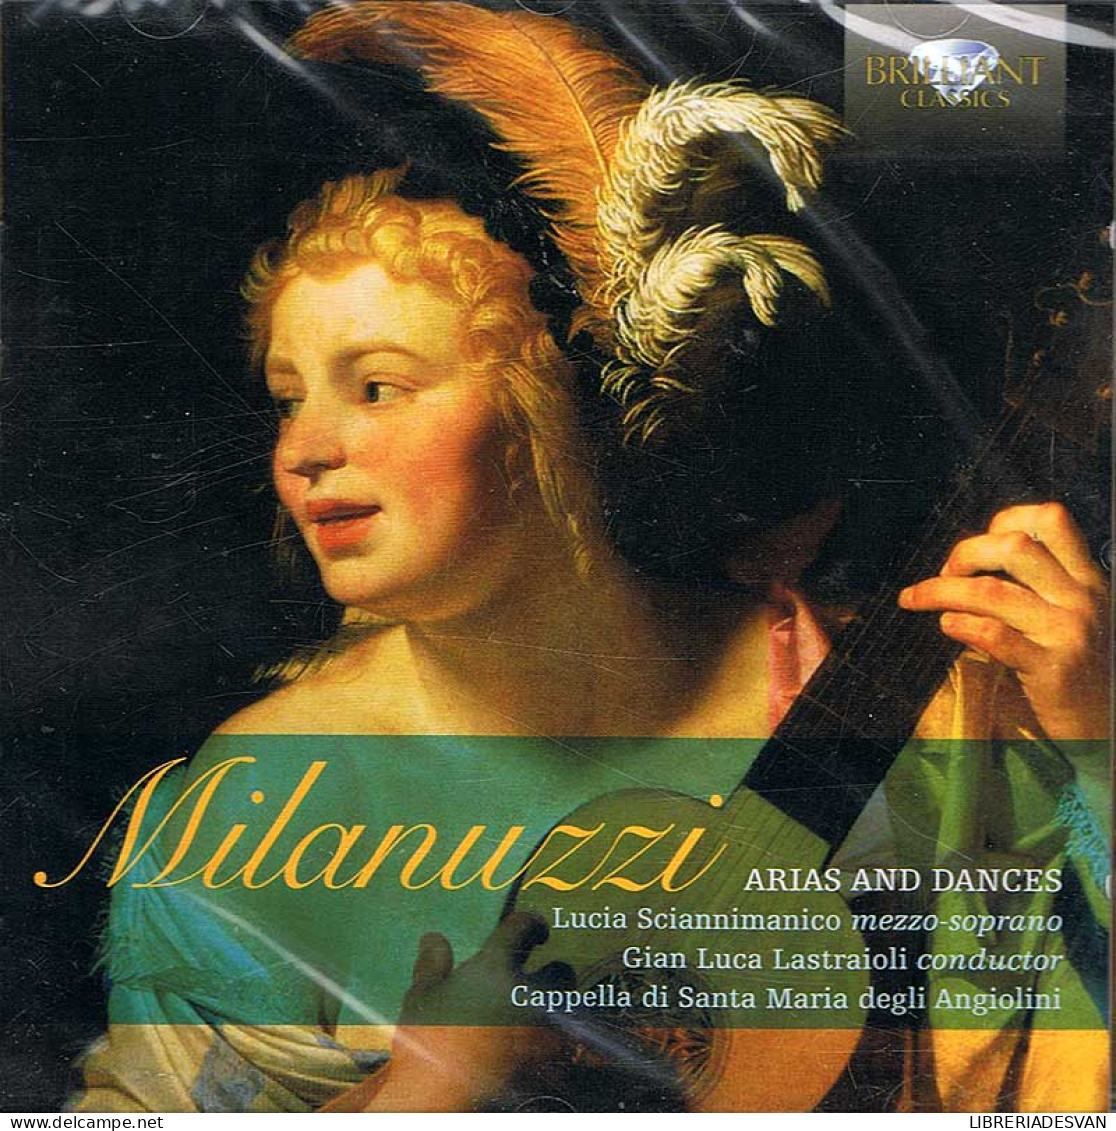 Milanuzzi - Arias And Dances. CD - Classica